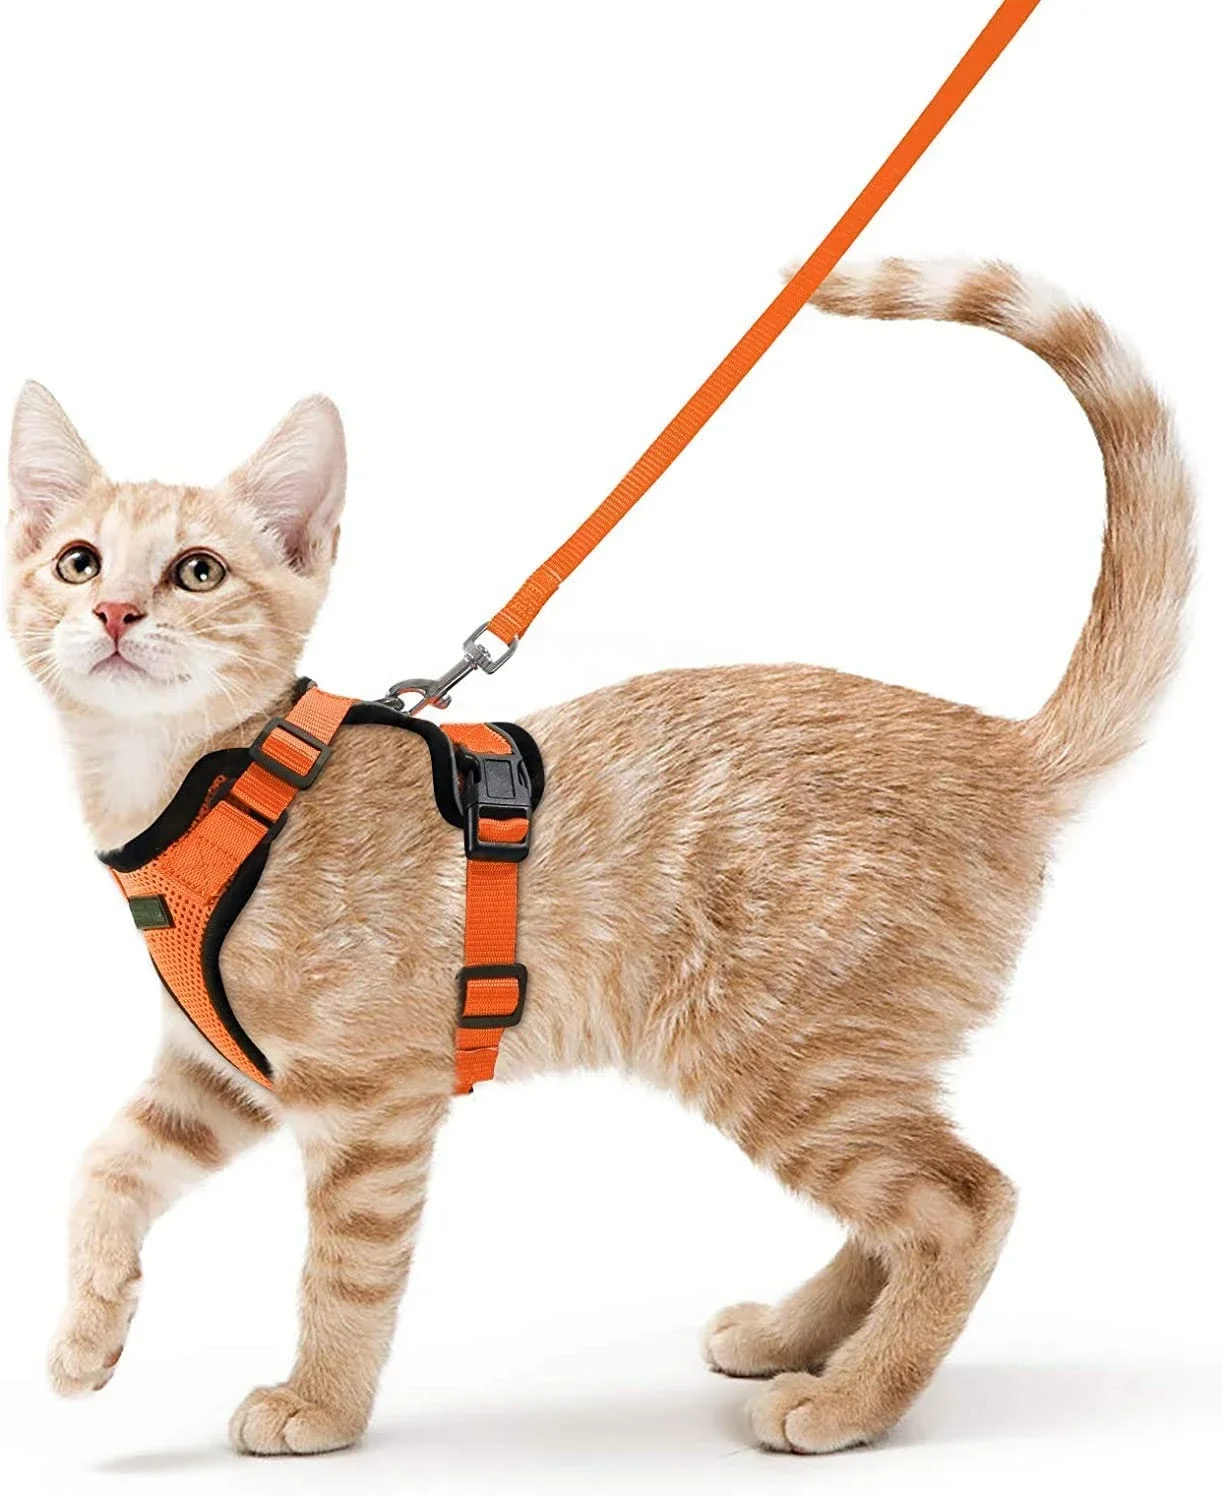 ATUBAN 걷기용 고양이 하네스 및 가죽 끈, 통기성 반사 스트립 재킷, 부드러운 고양이 조끼 하네스, 조절 가능